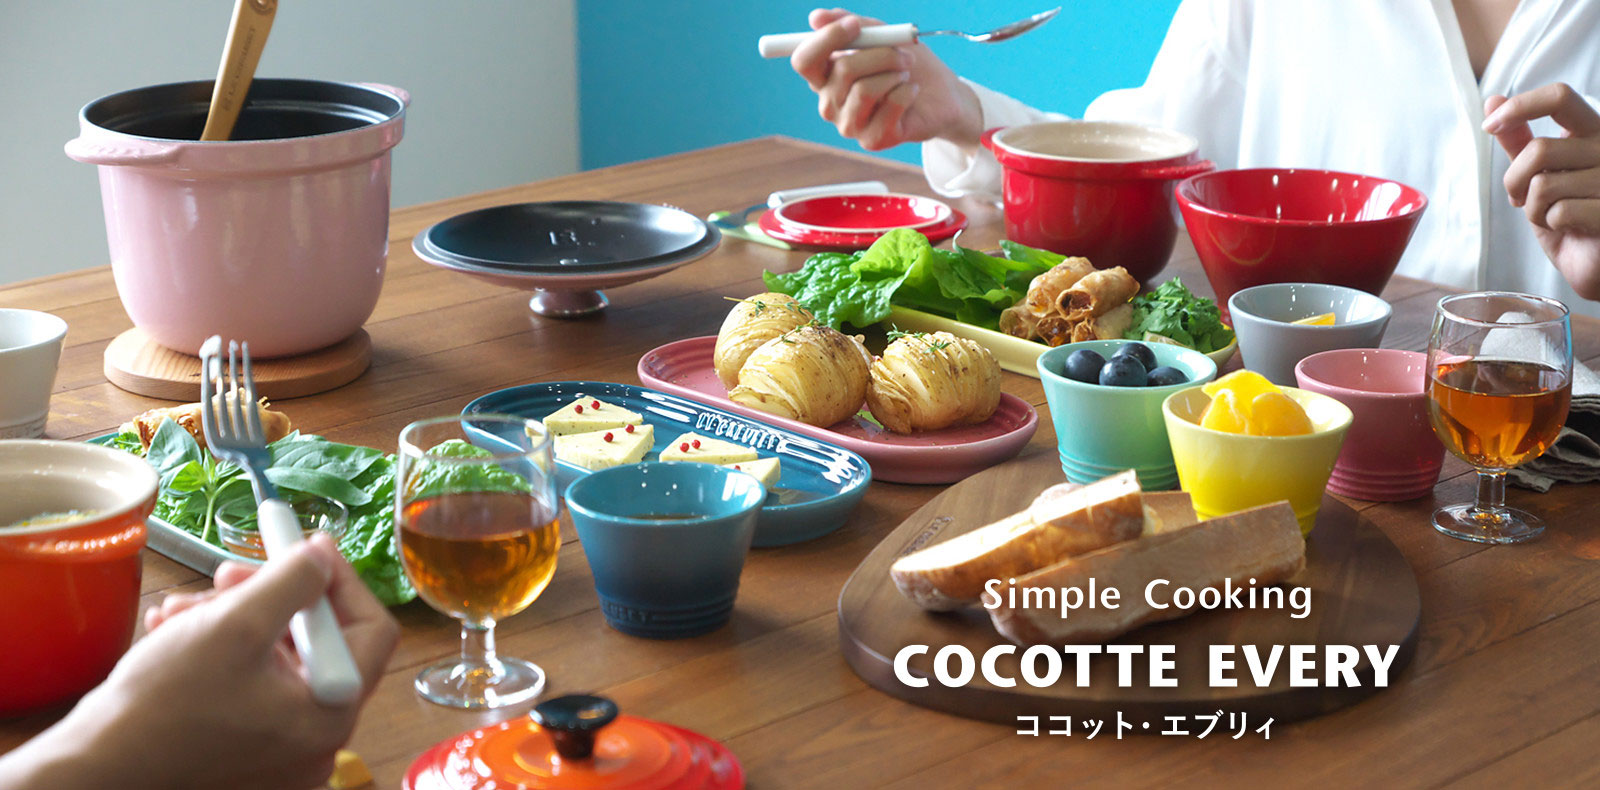 ココット・エブリィ/COCOTTE EVERY - Simple Cooking/シンプル 